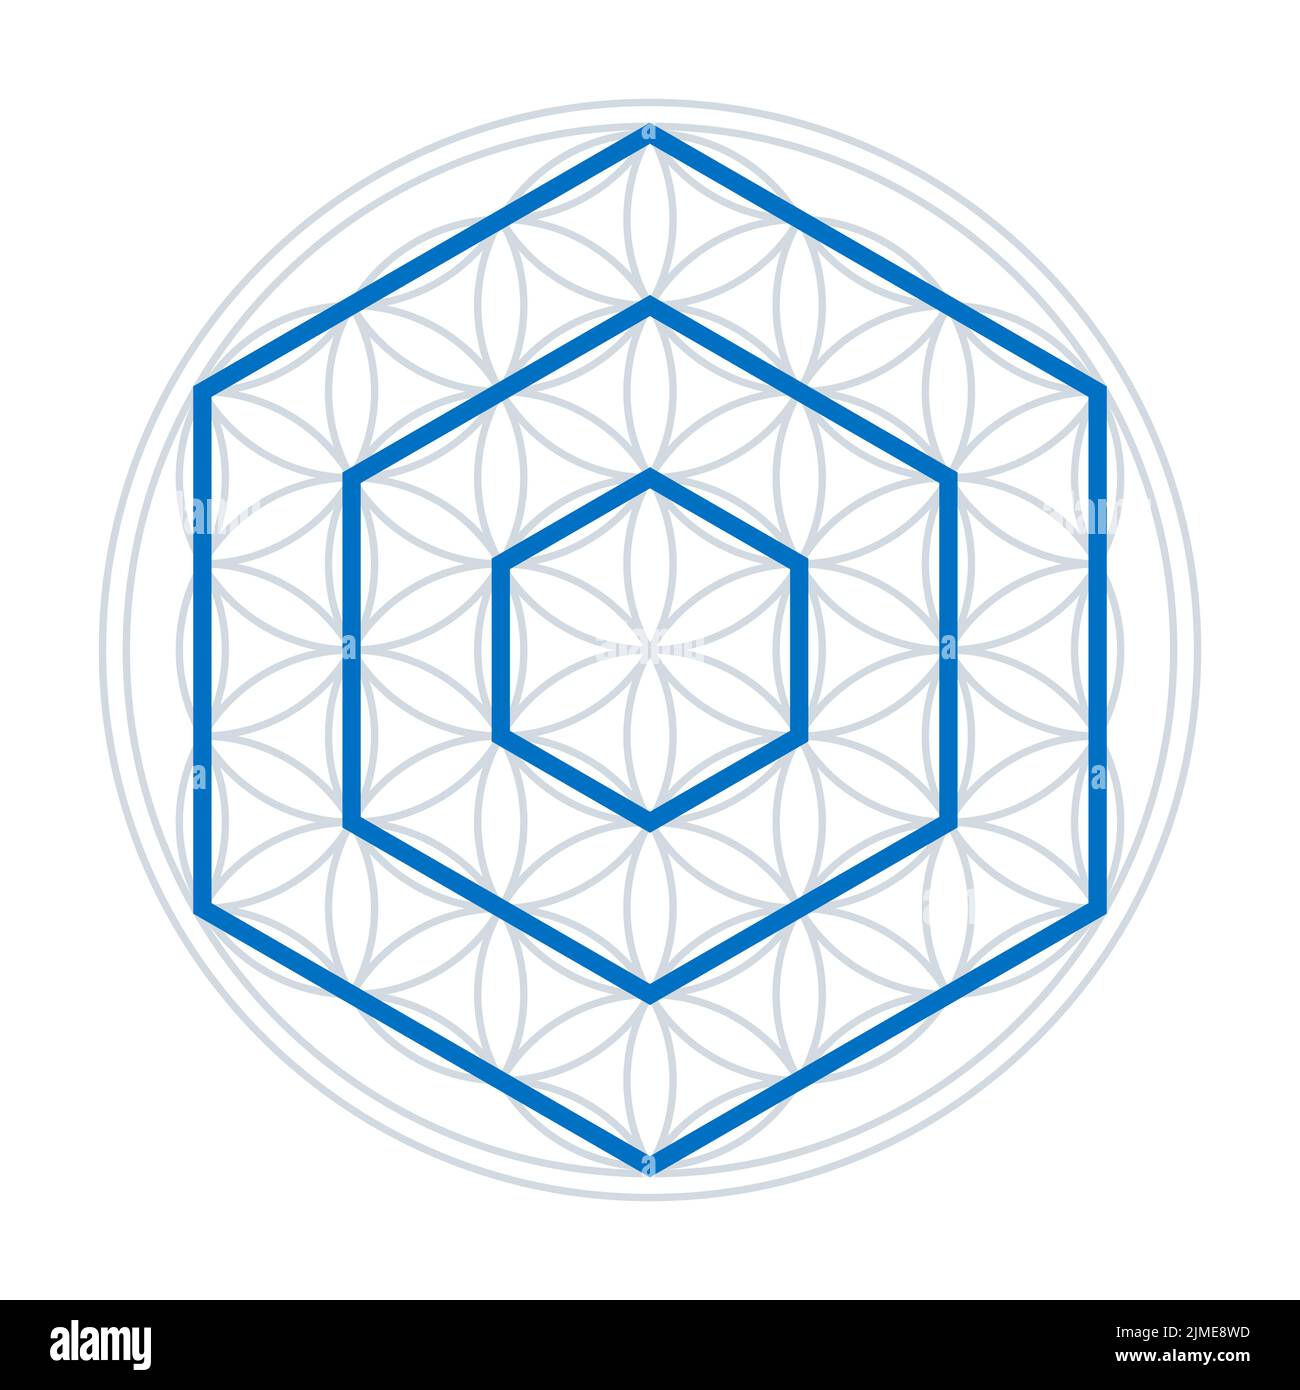 Tre esagoni in un fiore della vita. Poligoni blu con sei lati ciascuno, le punte in su, sopra una figura geometrica, con cerchi sovrapposti. Foto Stock